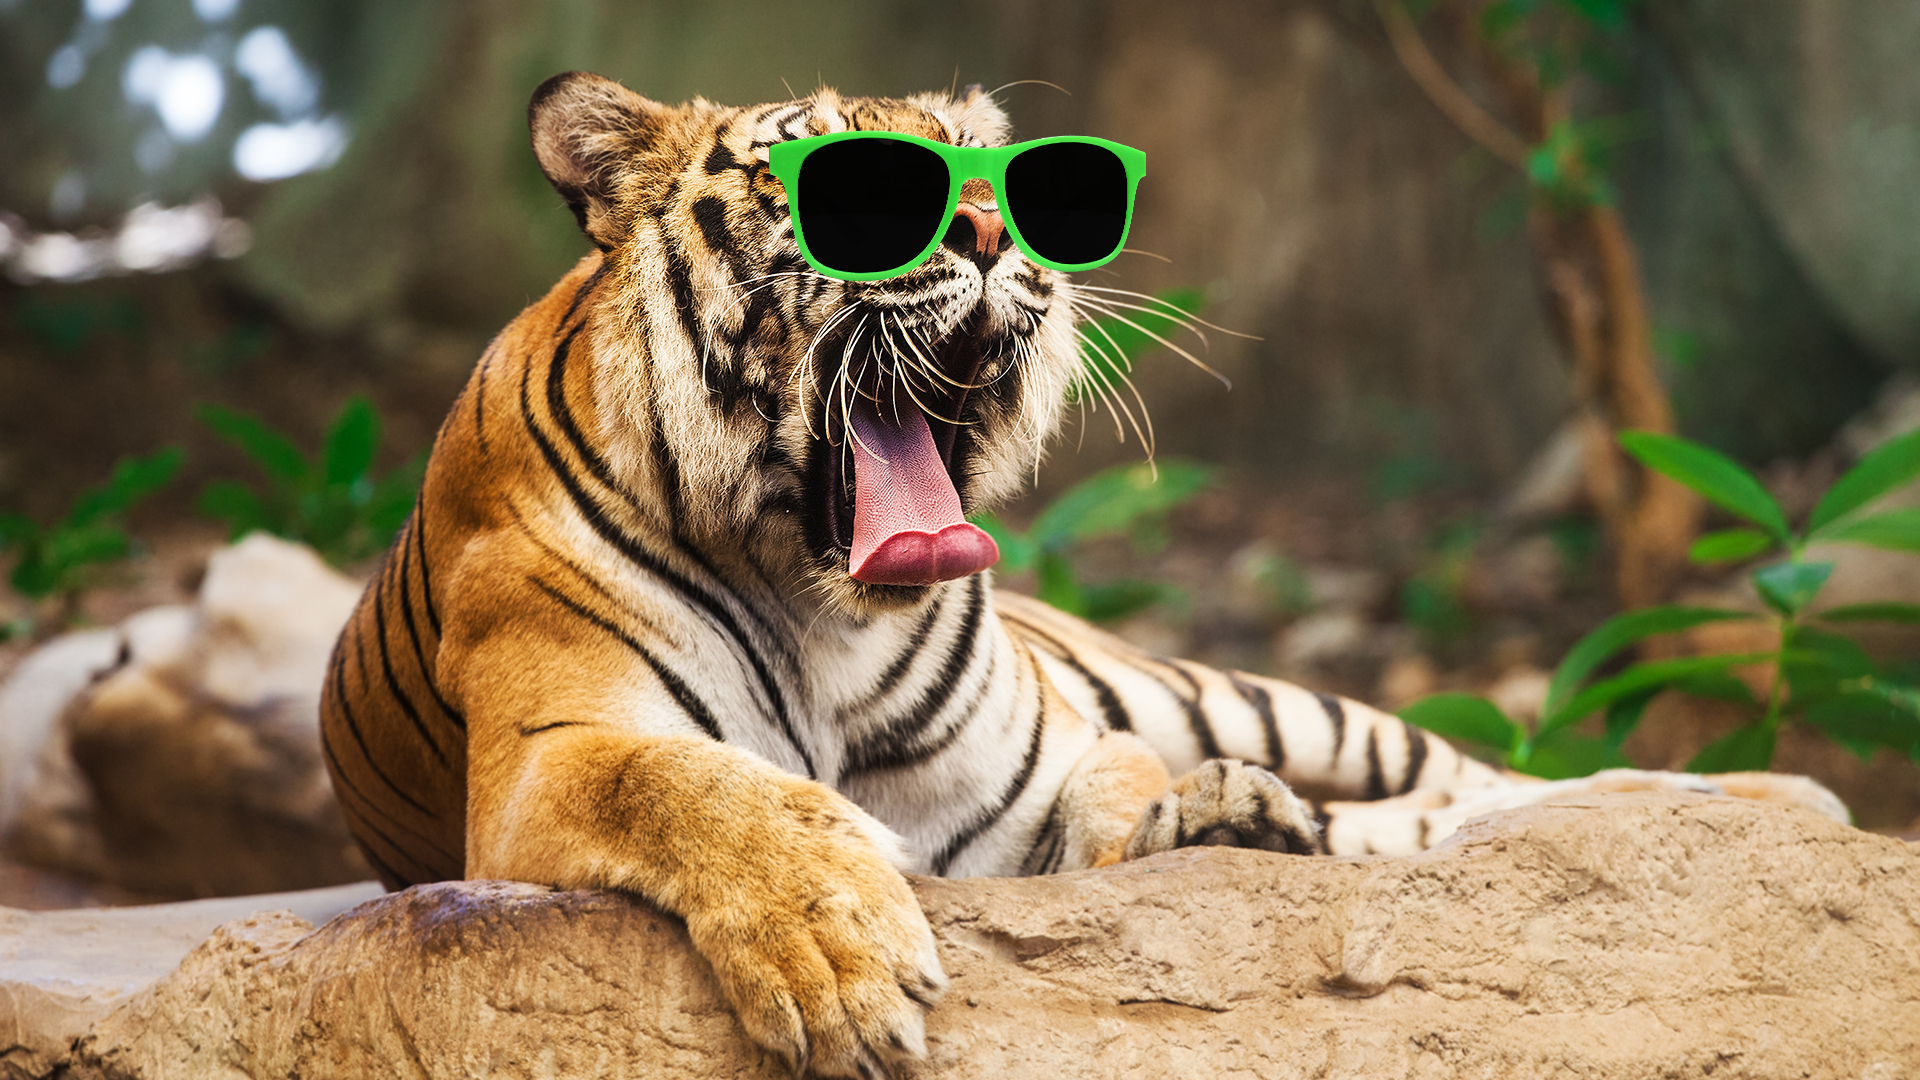 A tiger in sunglasses